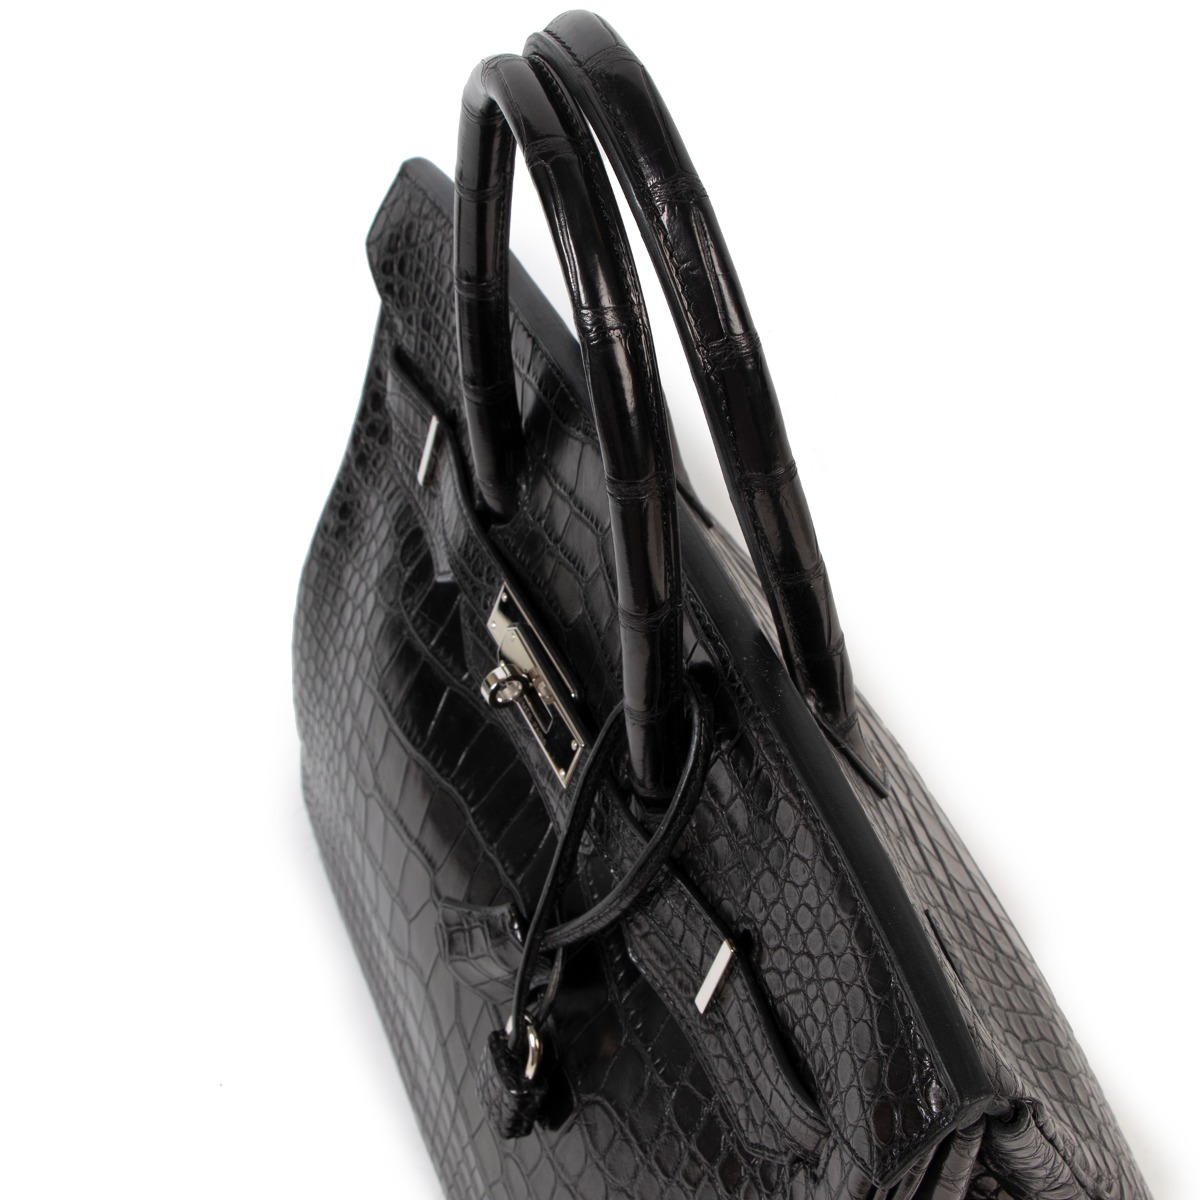 Hermès Birkin 35 Alligator Beton Bag PHW – ZAK BAGS ©️